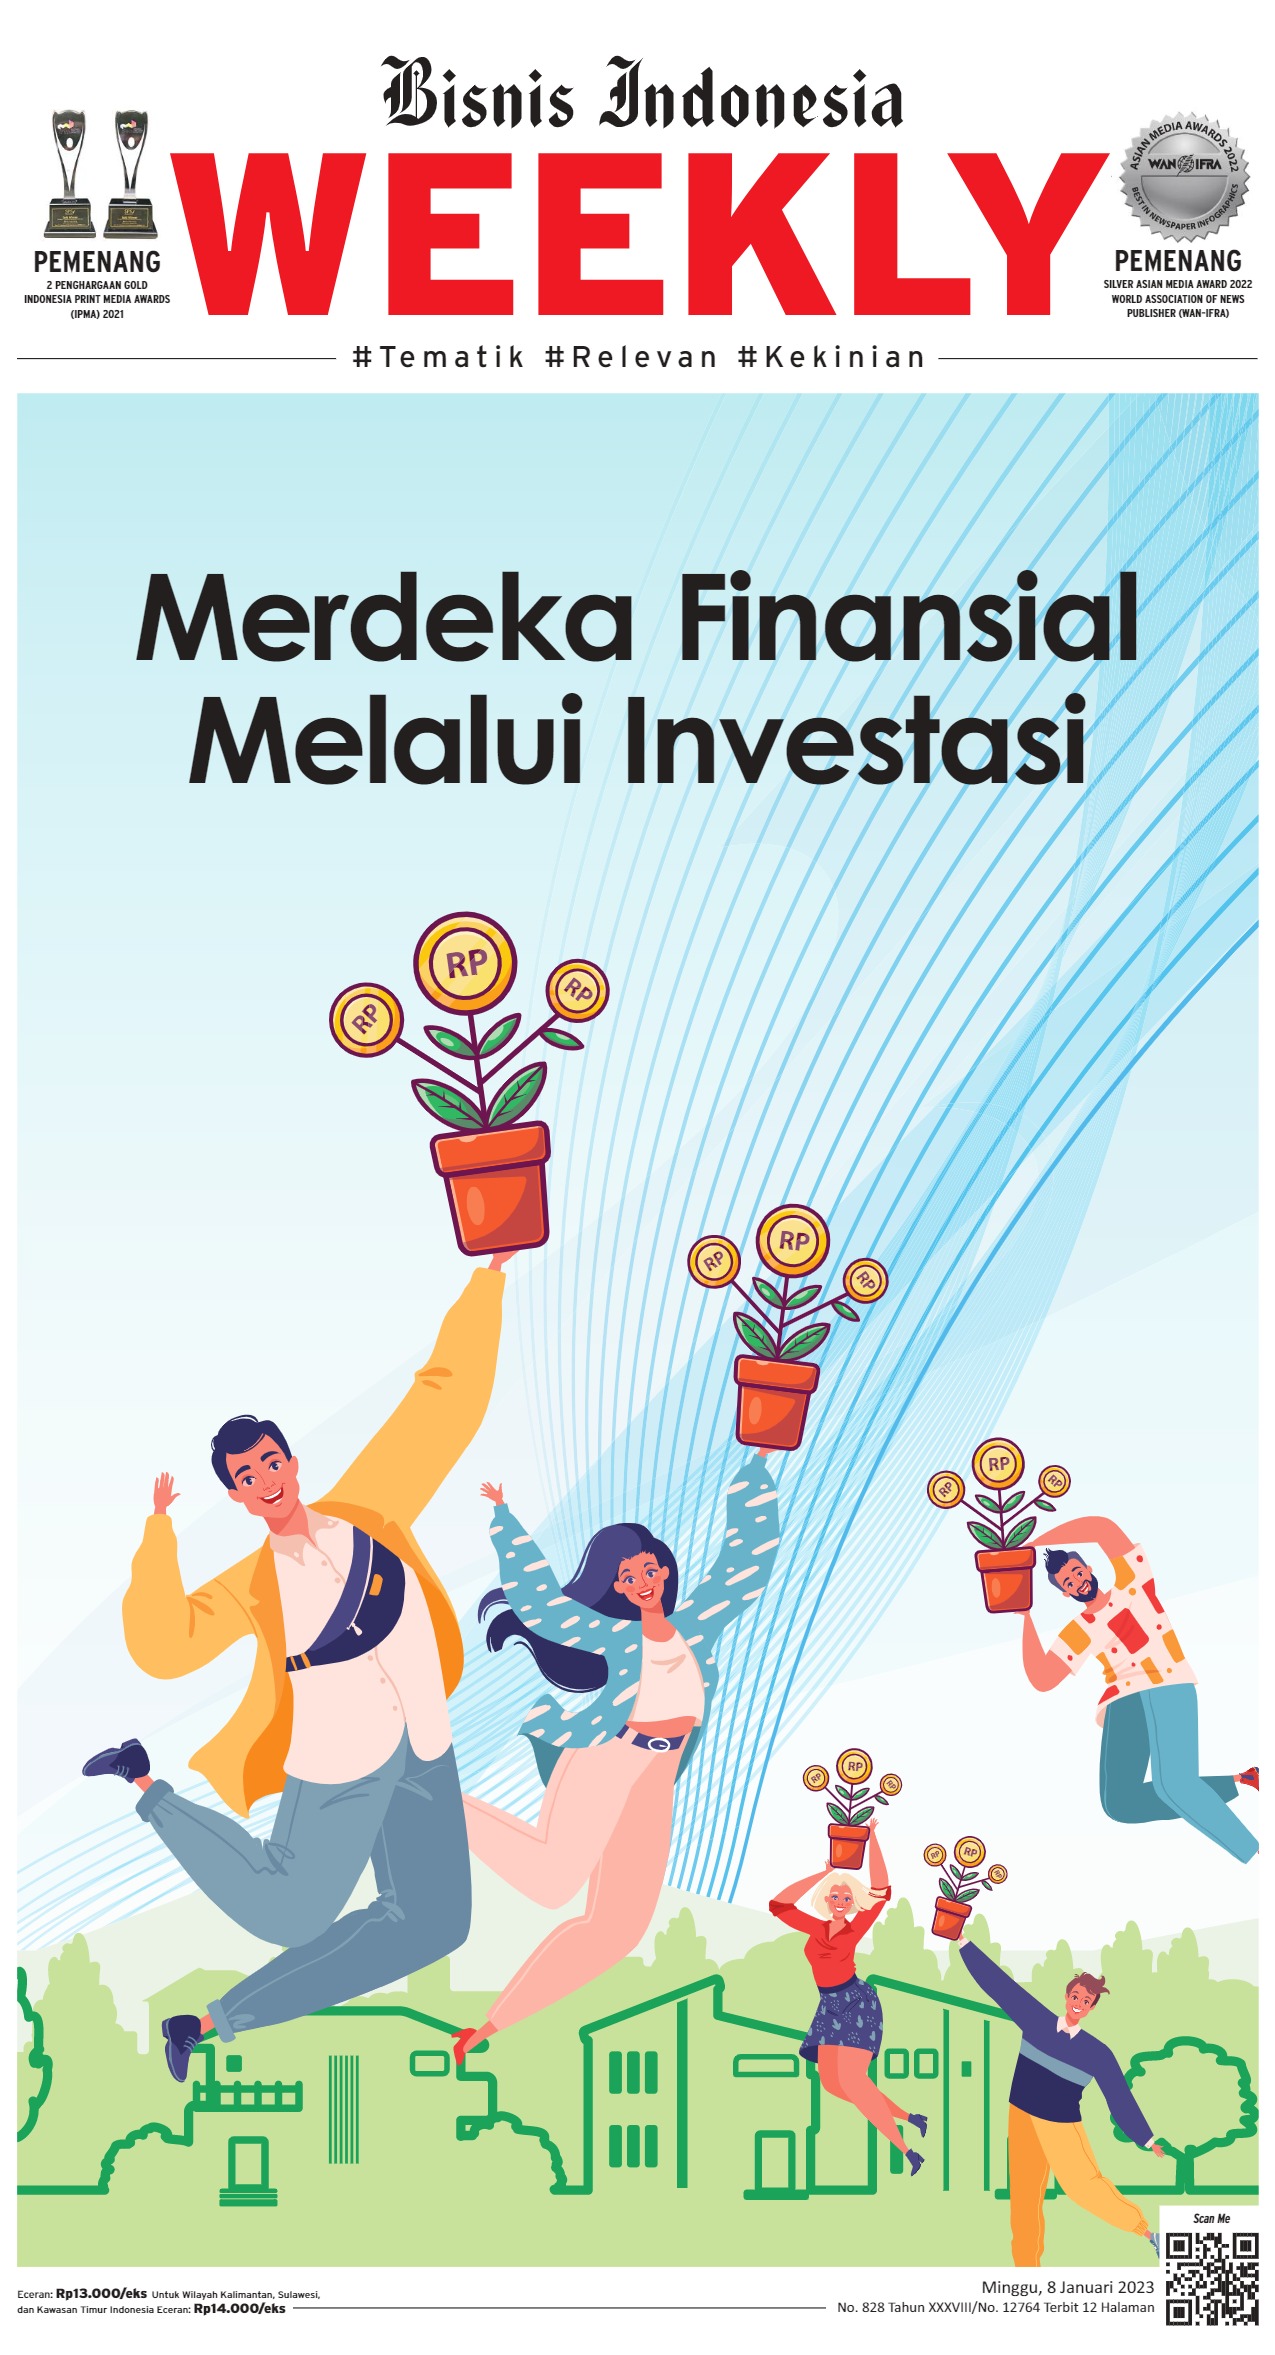 Bisnis Indonesia Edisi 08 Januari 2023